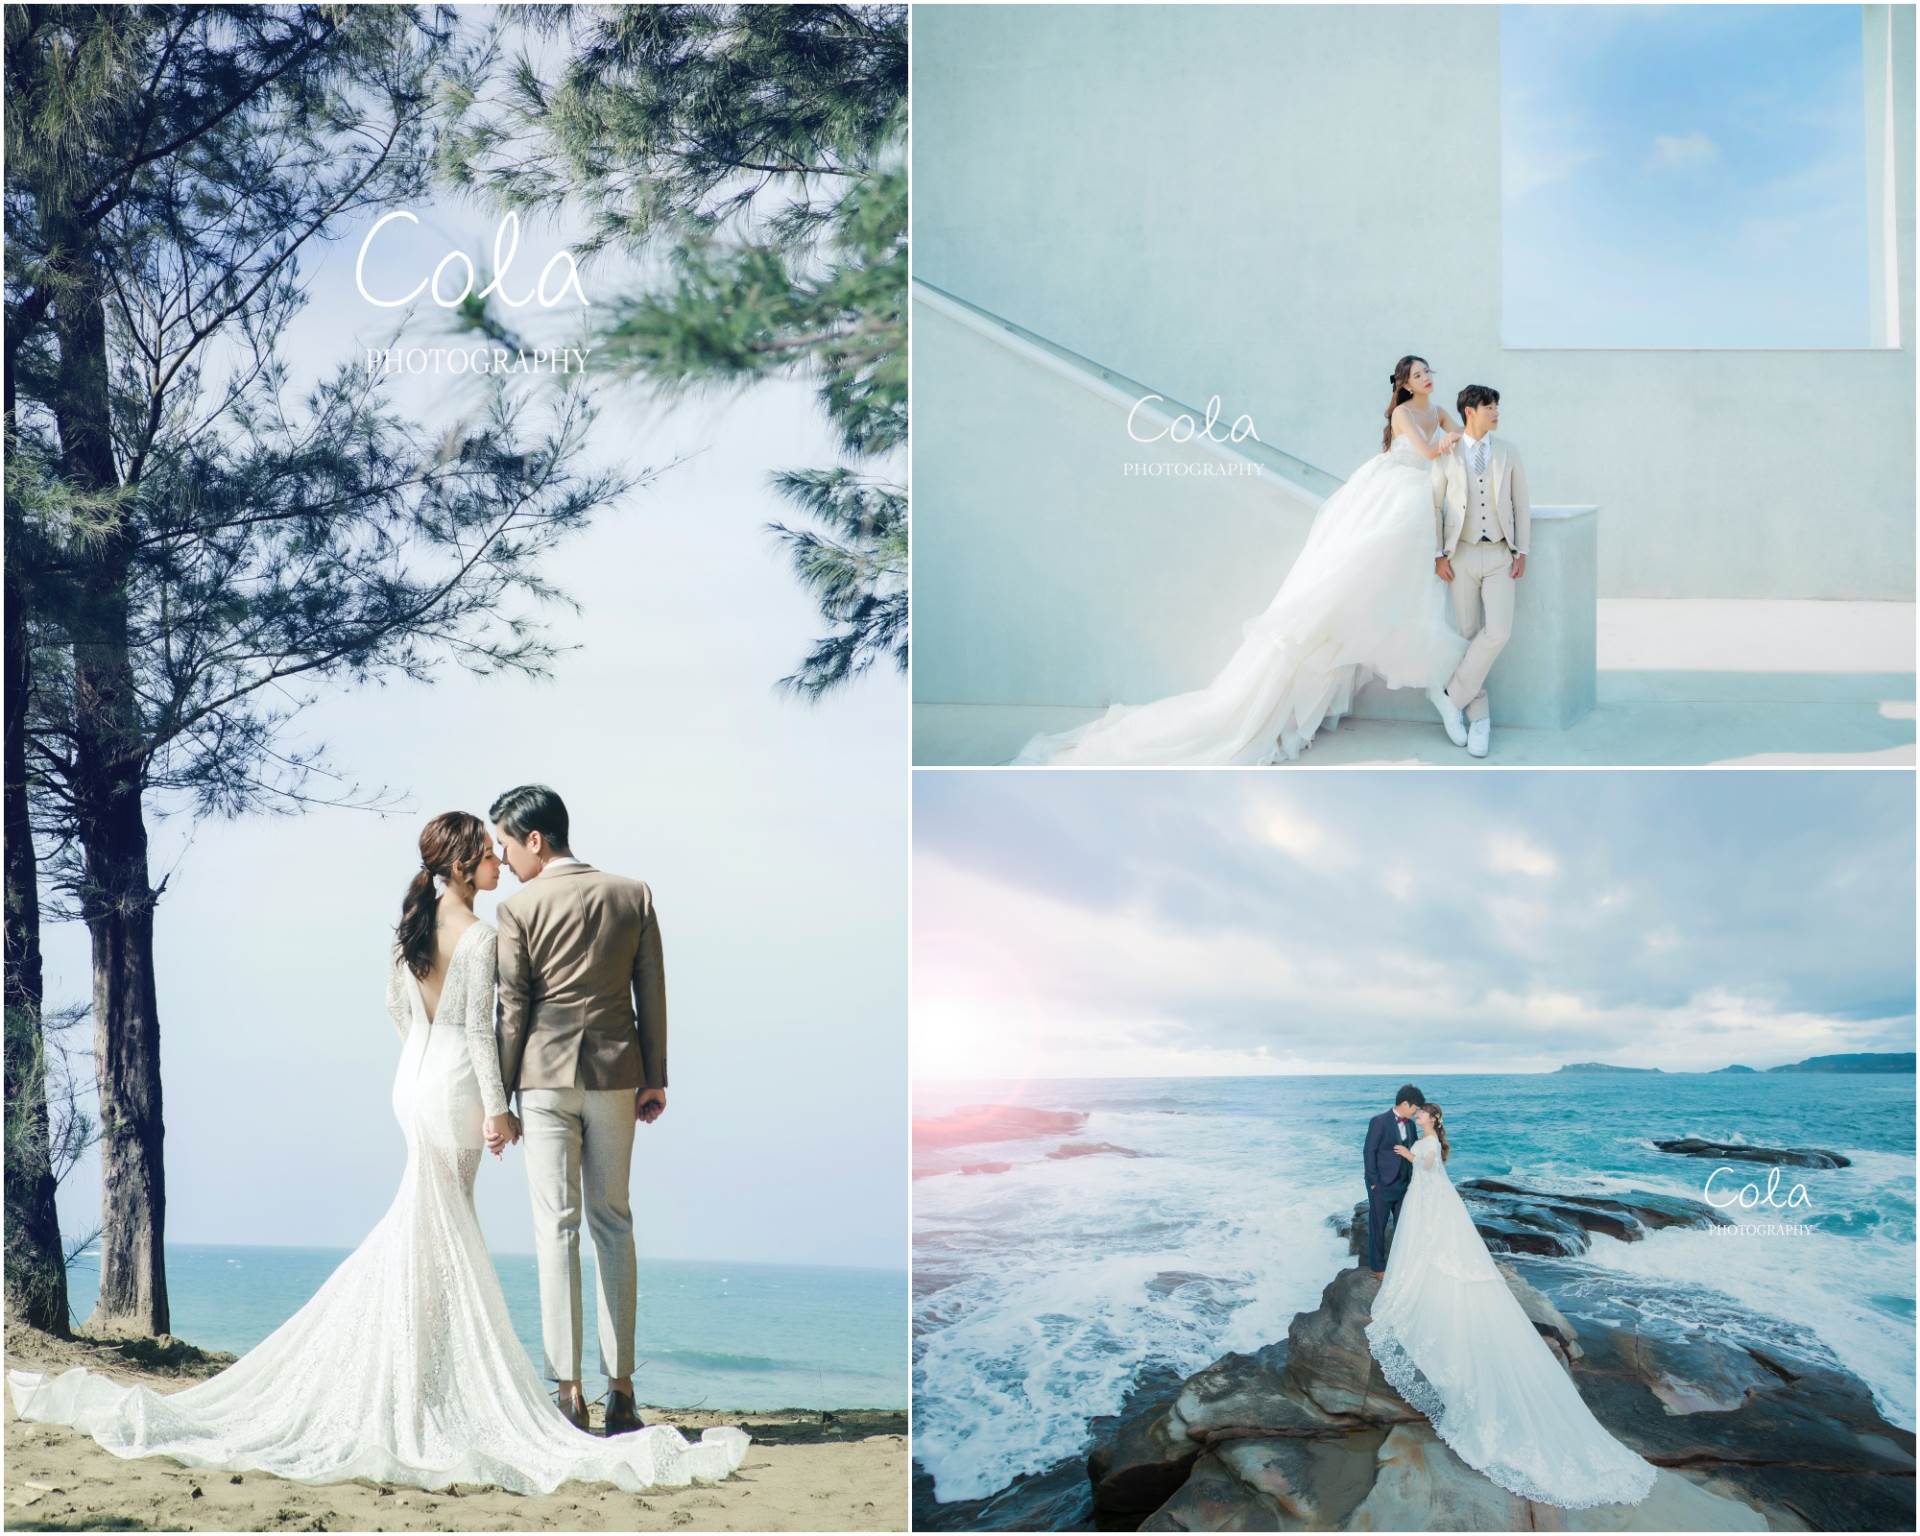 婚紗攝影,台北婚紗攝影,婚紗攝影推薦,婚紗攝影師